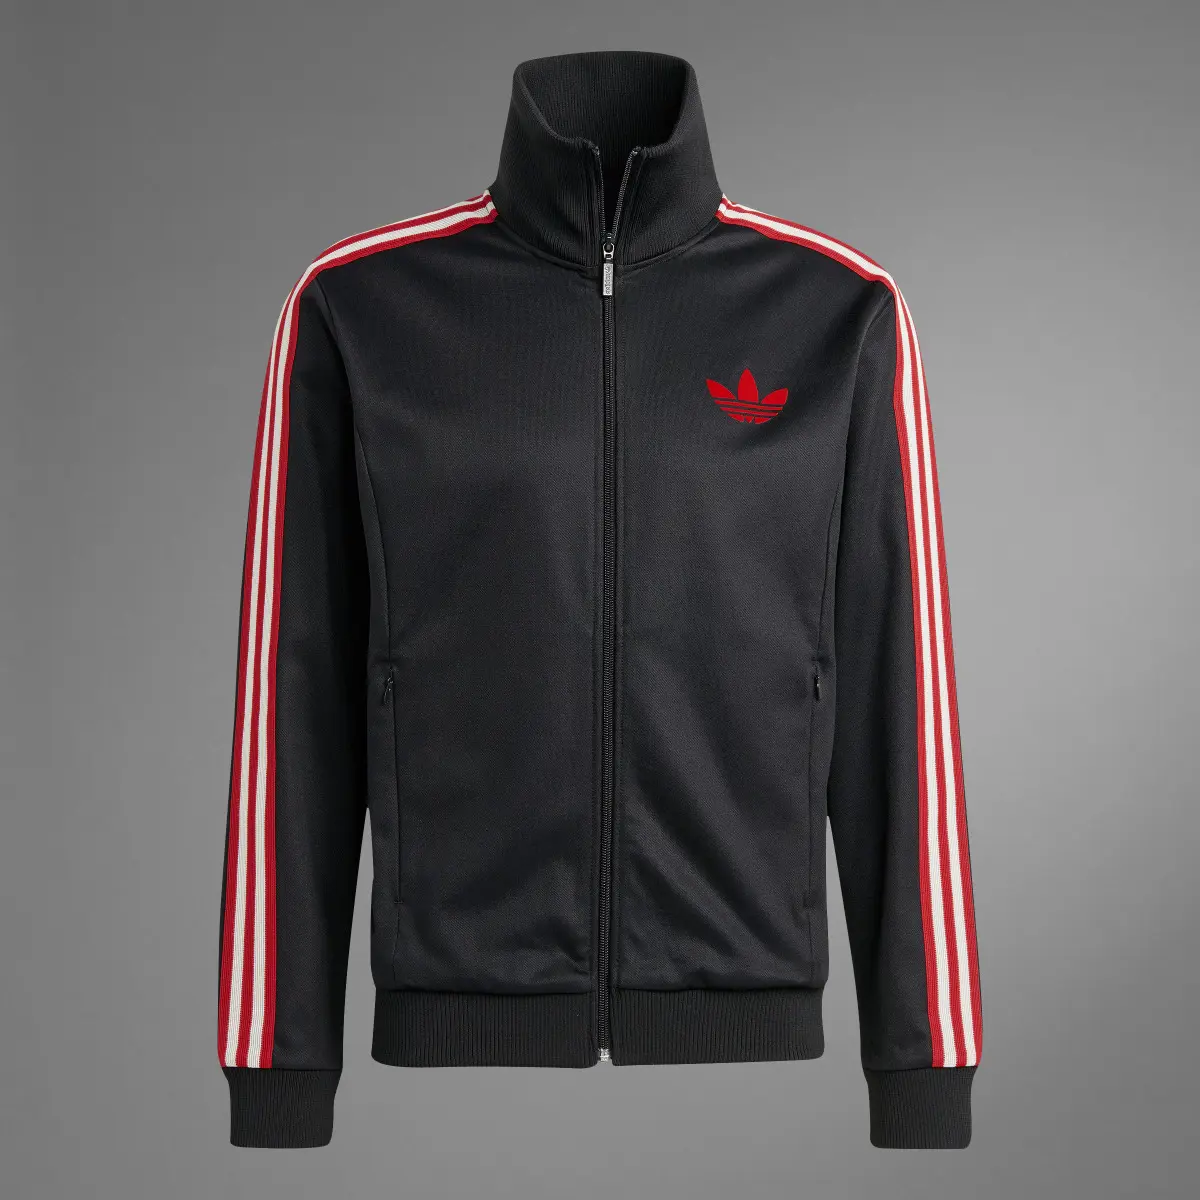 Adidas Track jacket OG Ajax Amsterdam. 3